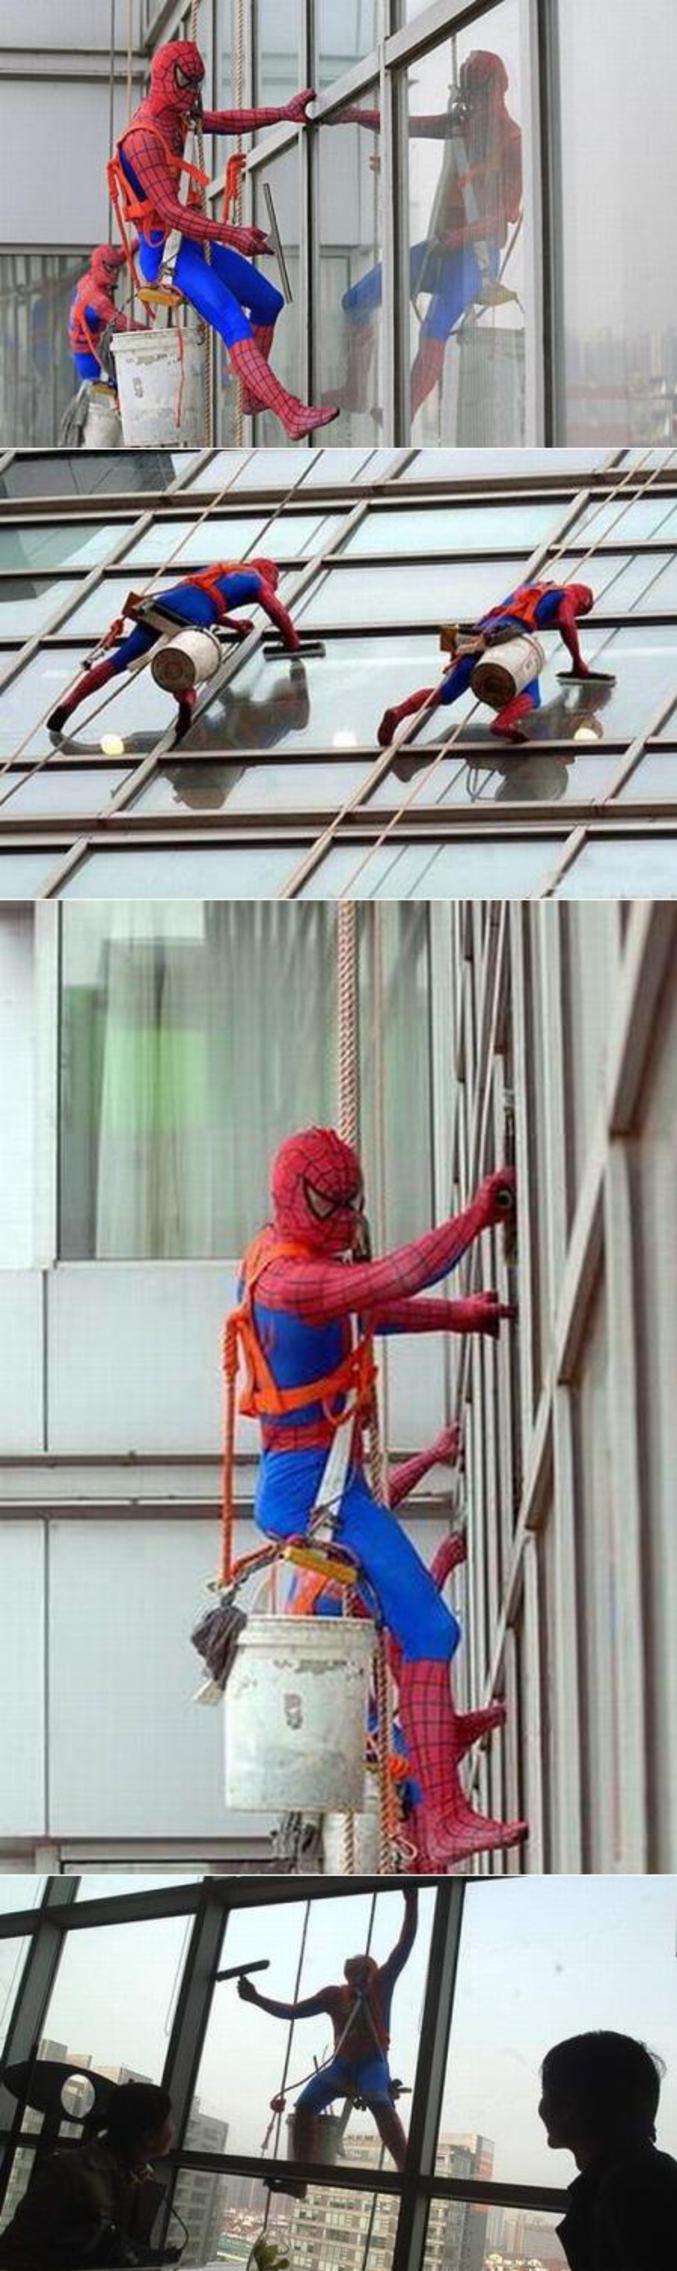 Le vrai métier de Spiderman en dehors du cinéma.